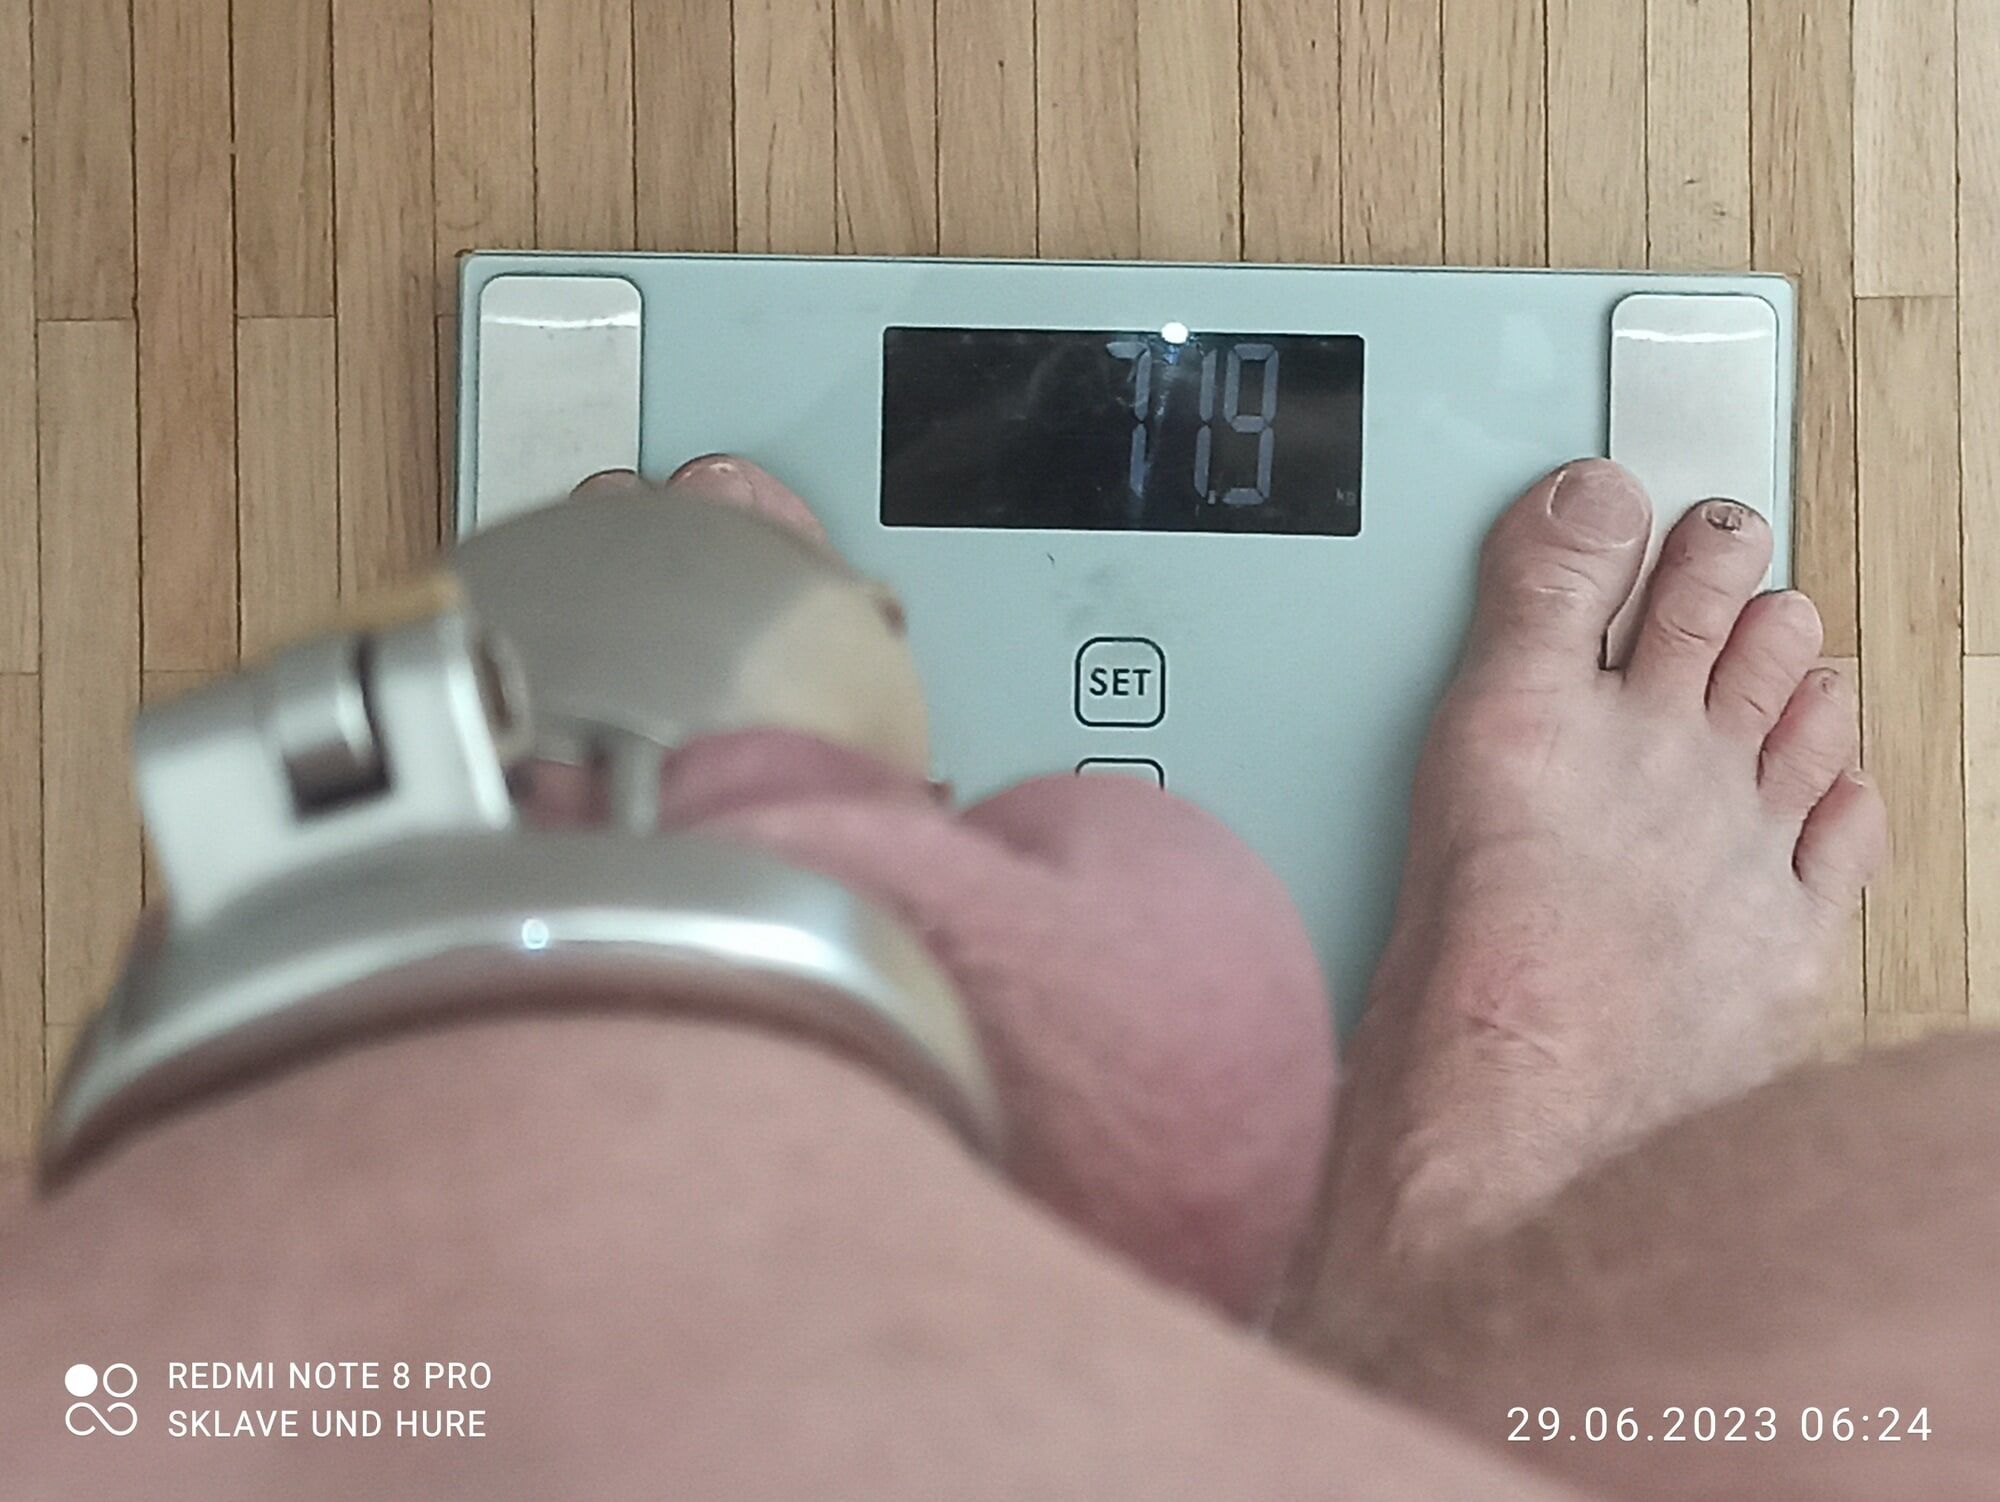 weighing , cagecheck, 29.06.2023 #12